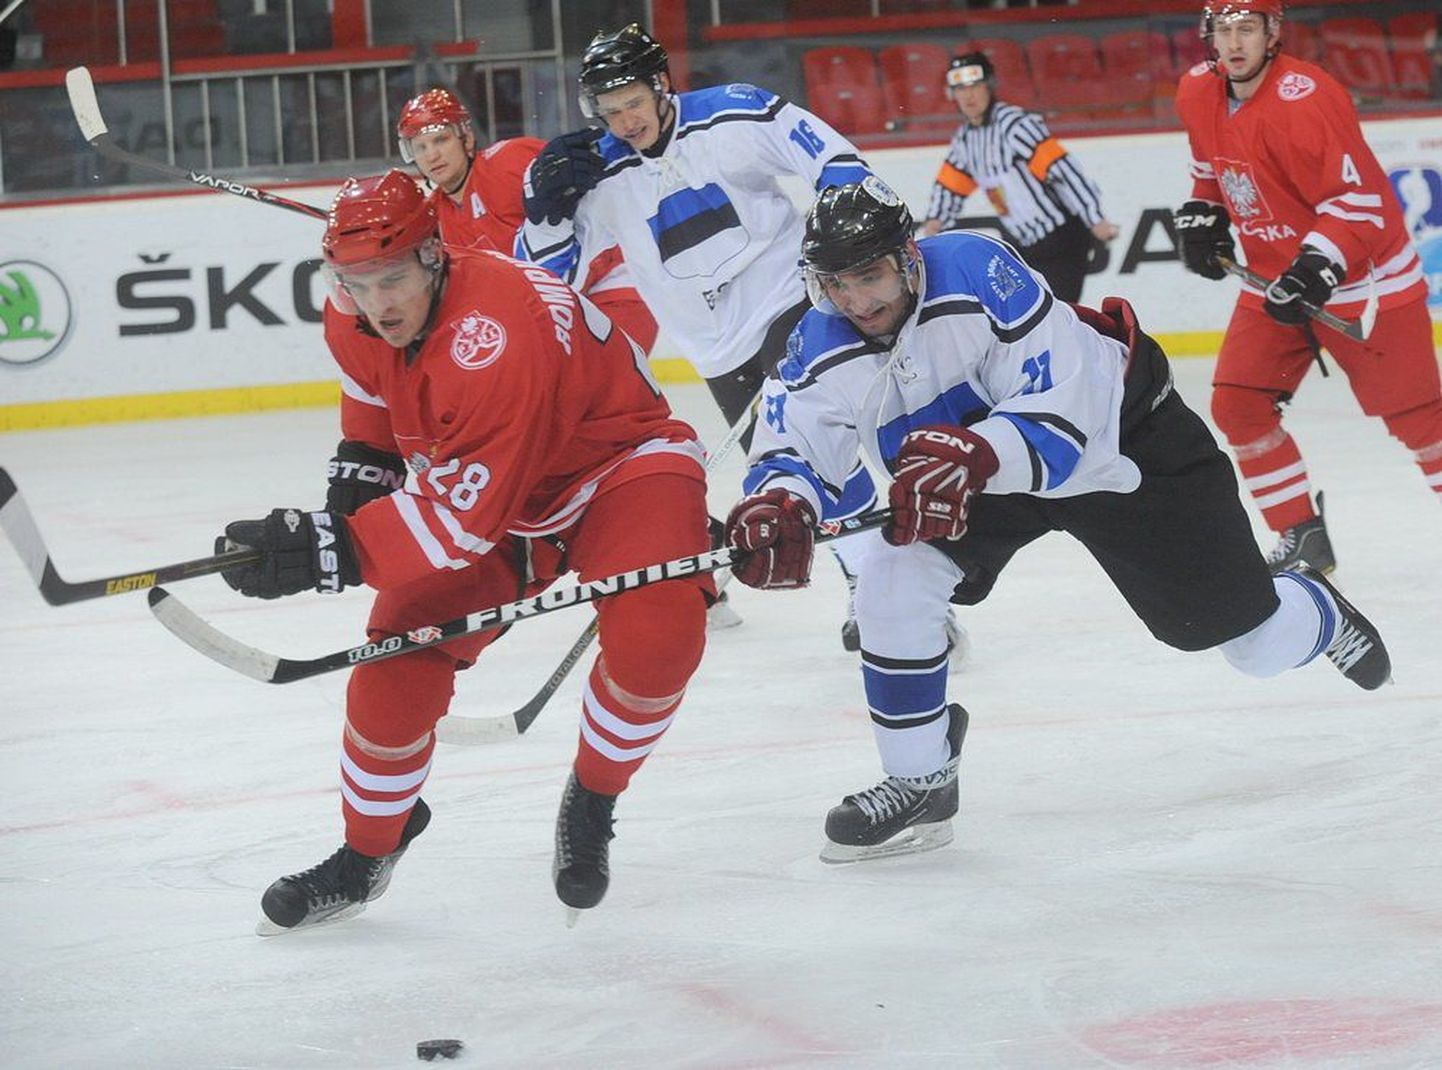 Момент вчерашнего матча Эстония - Польша на чемпионате мира по хоккею в Донецке.